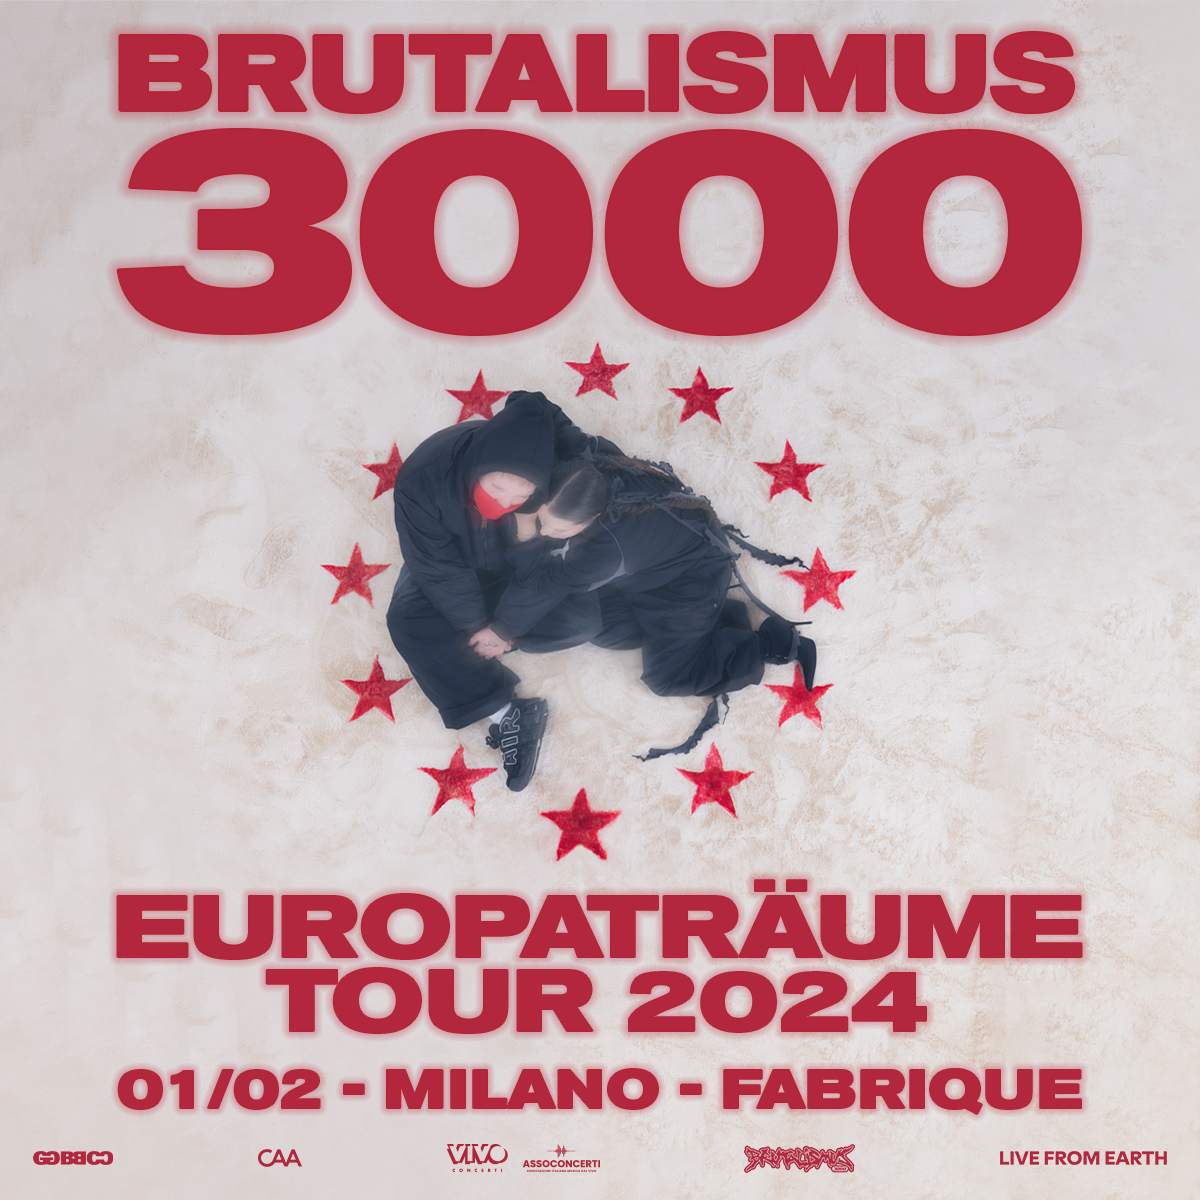 BRUTALISMUS 3000 - Página frontal